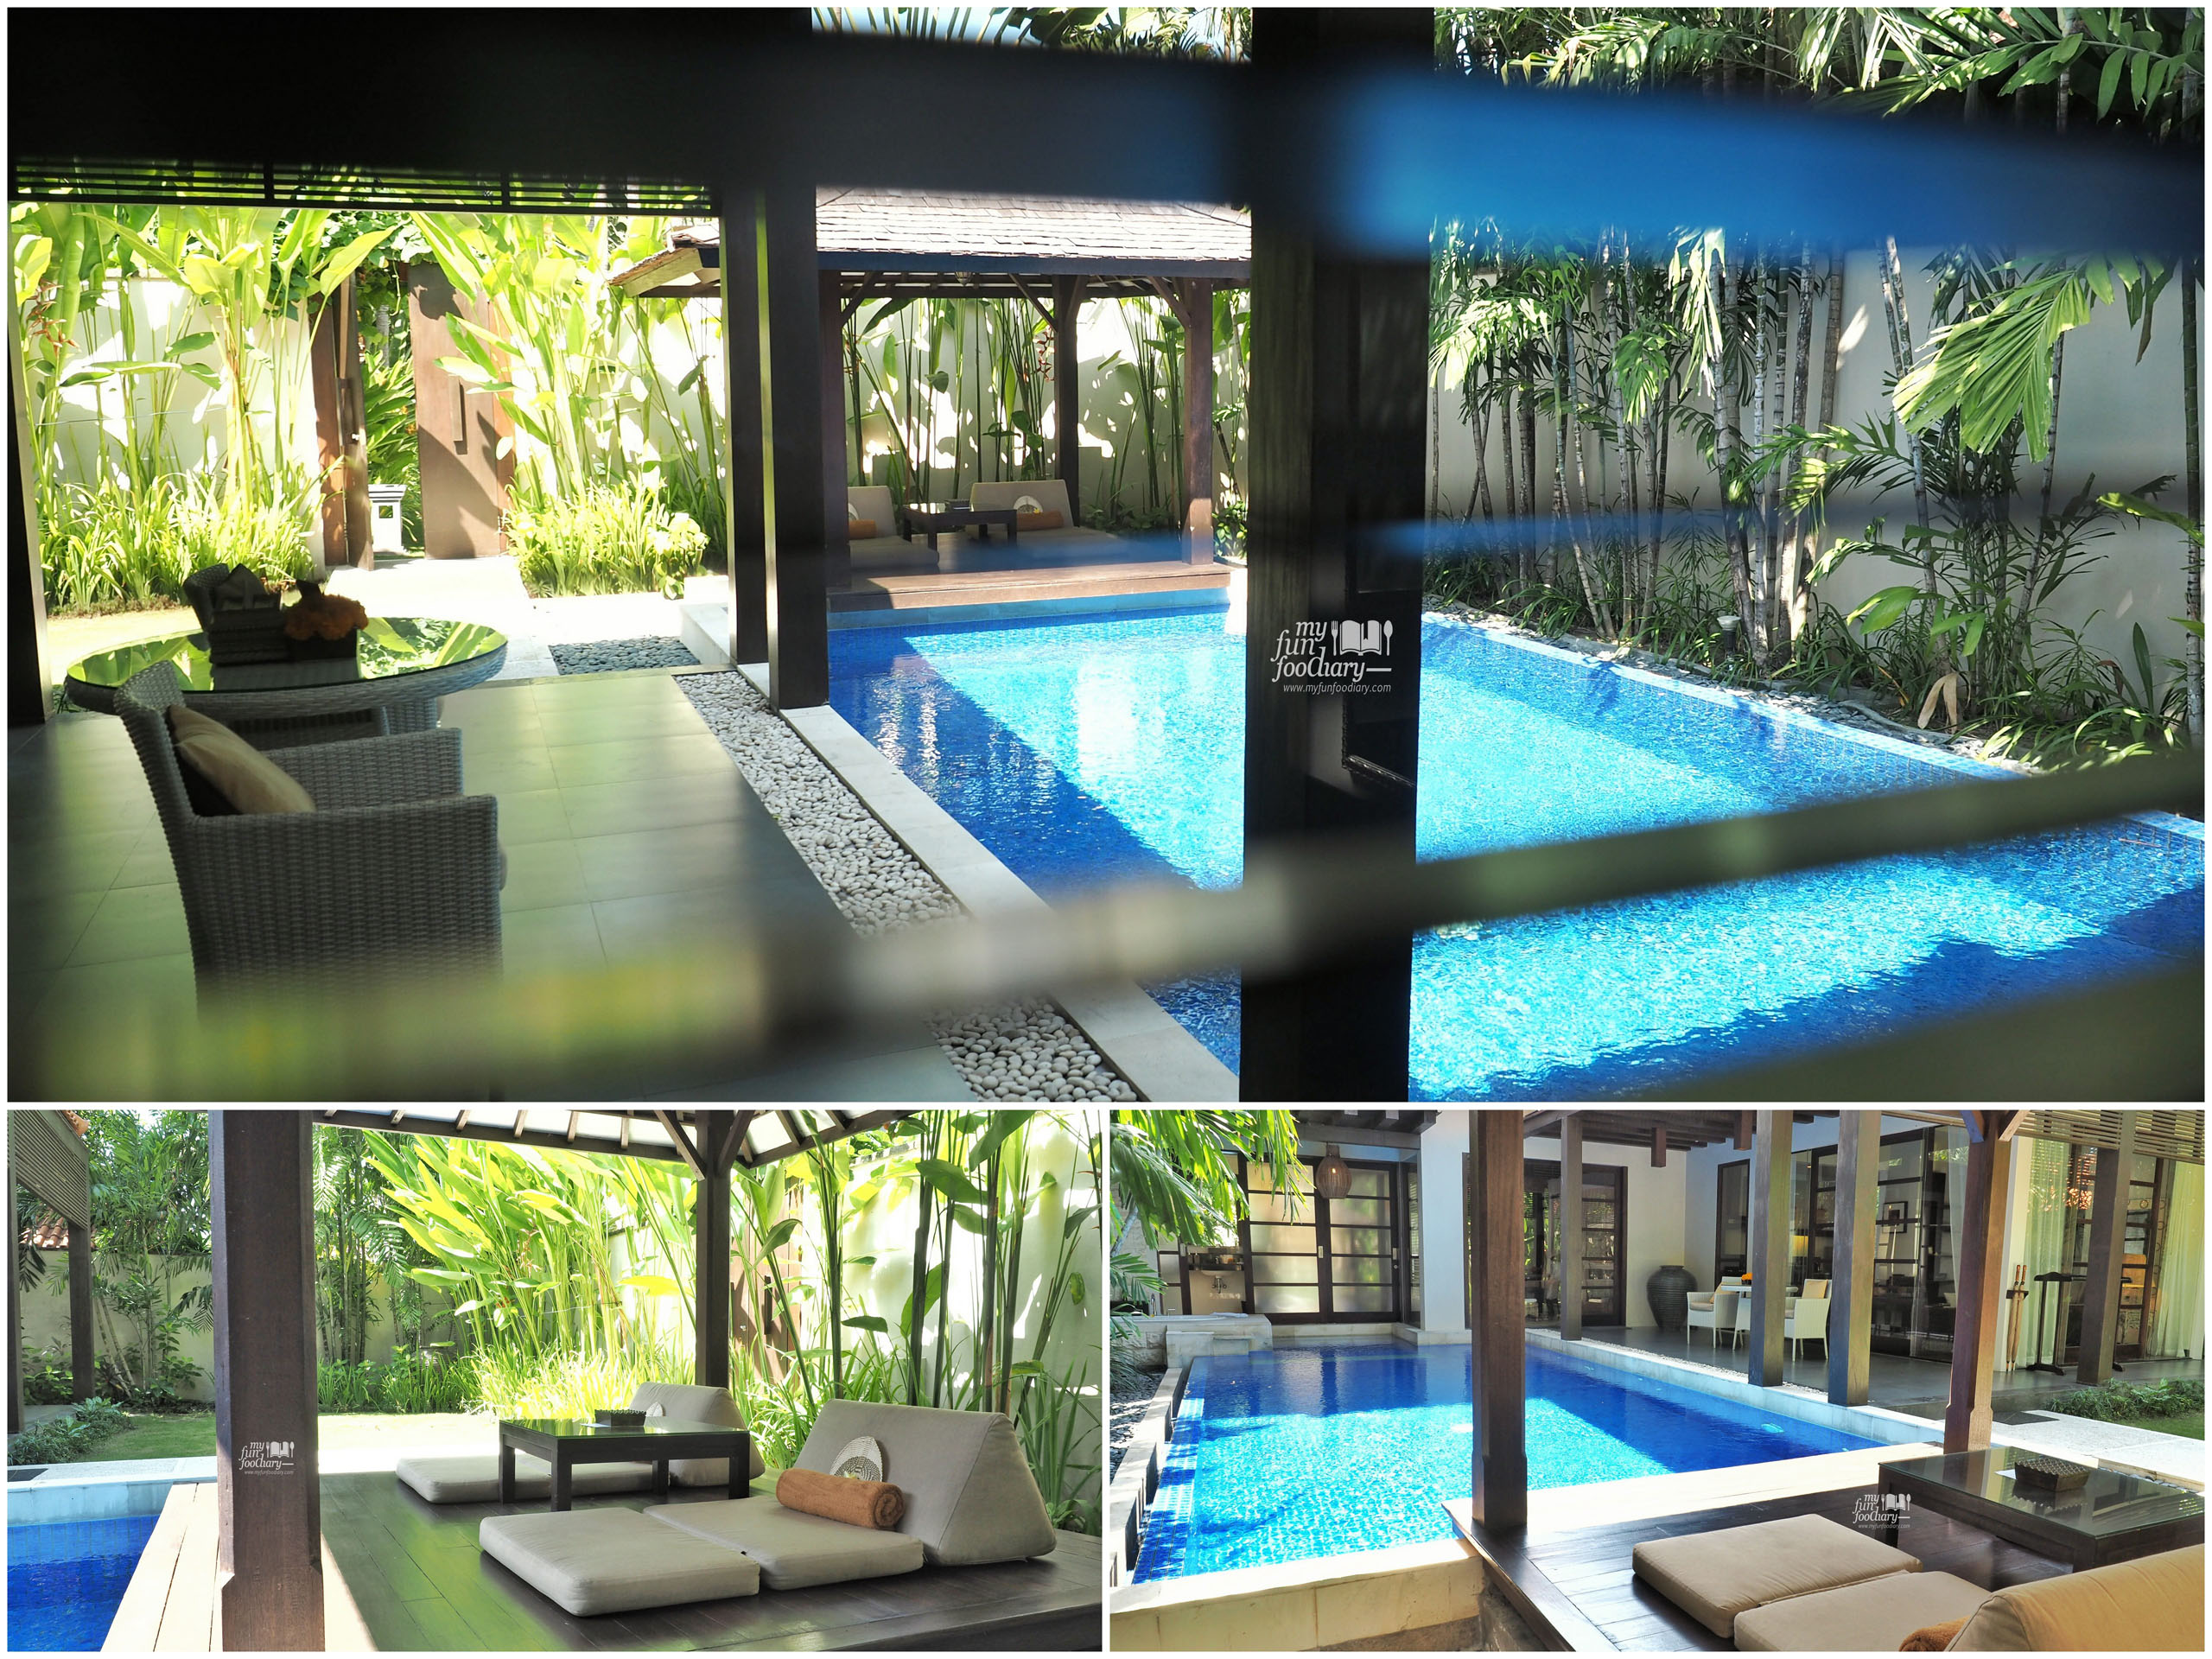 View of my private pool - Villa De Daun Kuta Bali by Myfunfoodiary